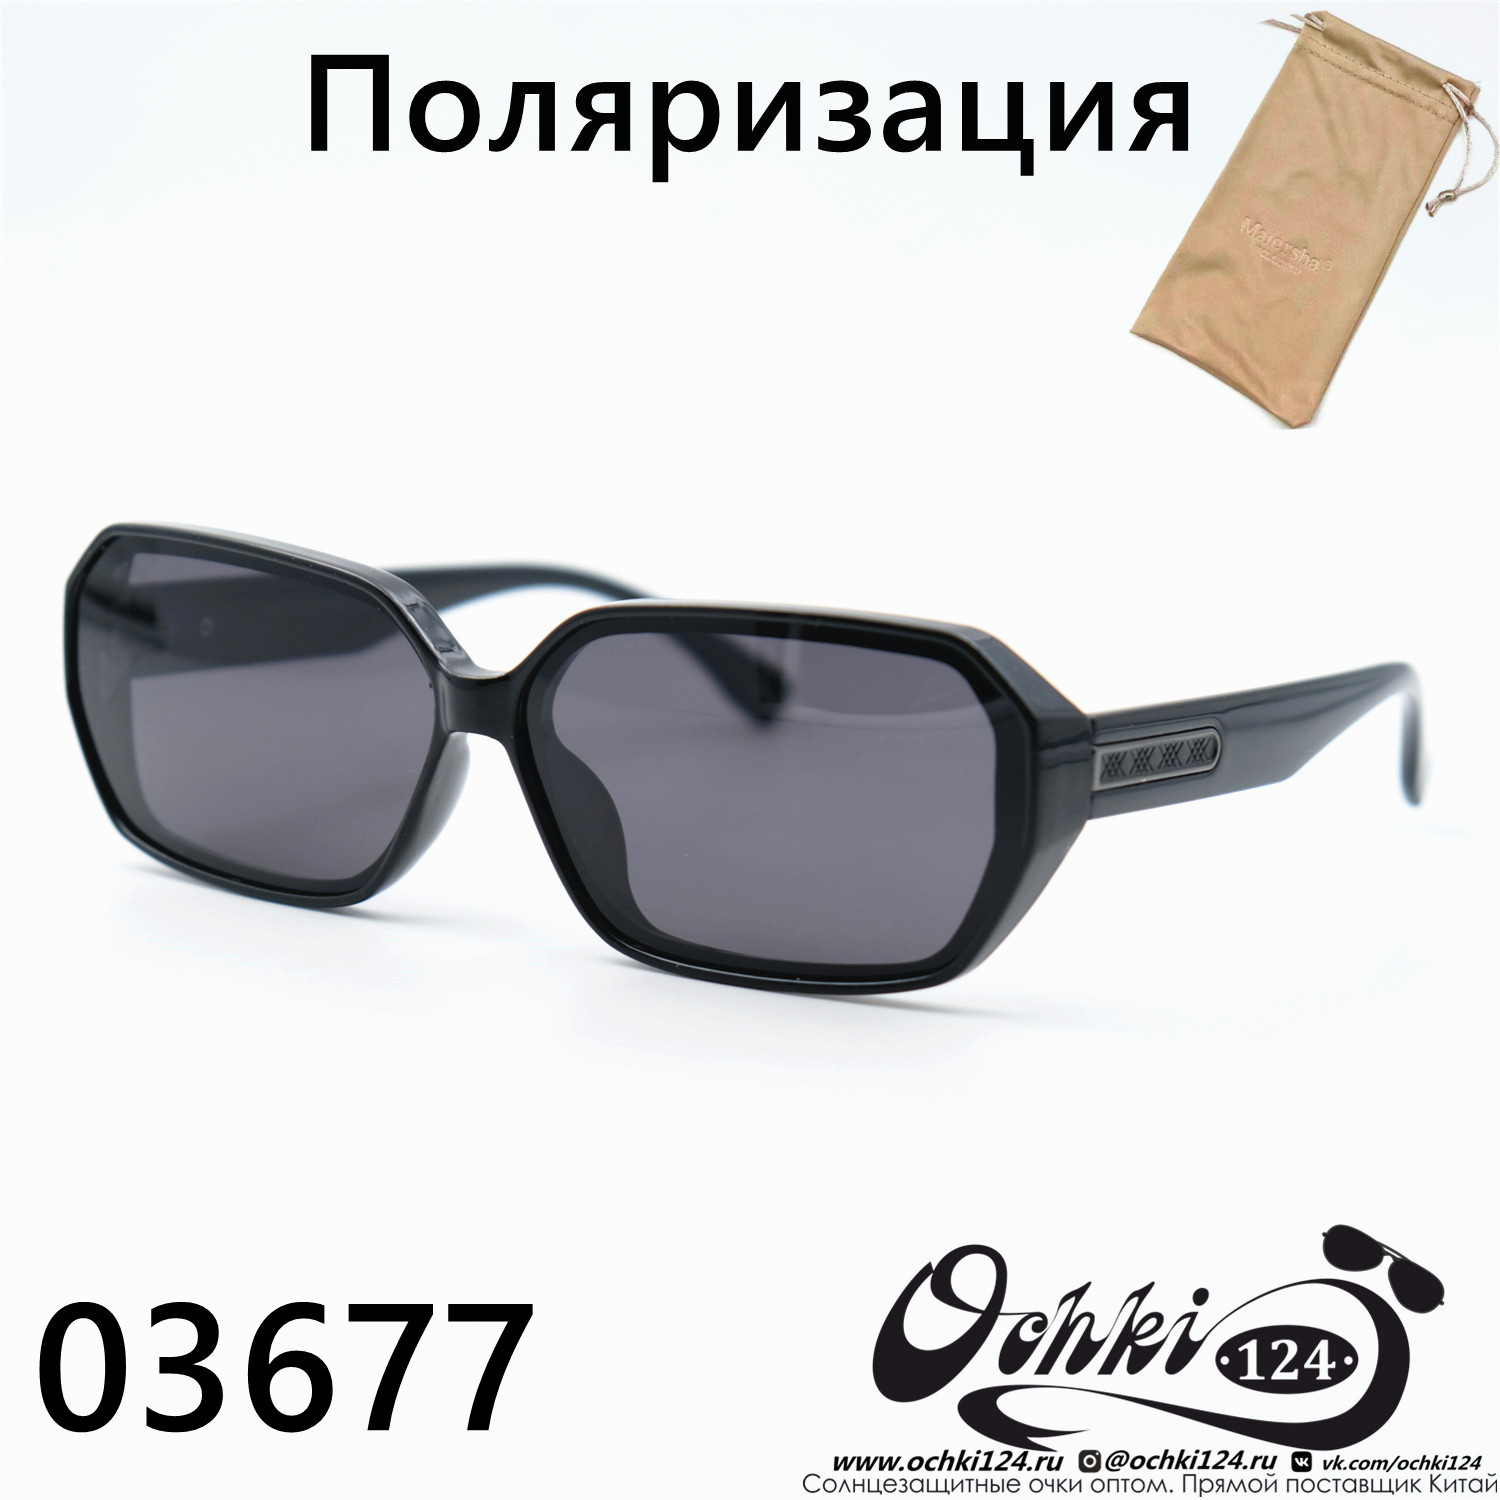  Солнцезащитные очки картинка 2023 Женские Узкие и длинные Maiersha 03677-C9-31 